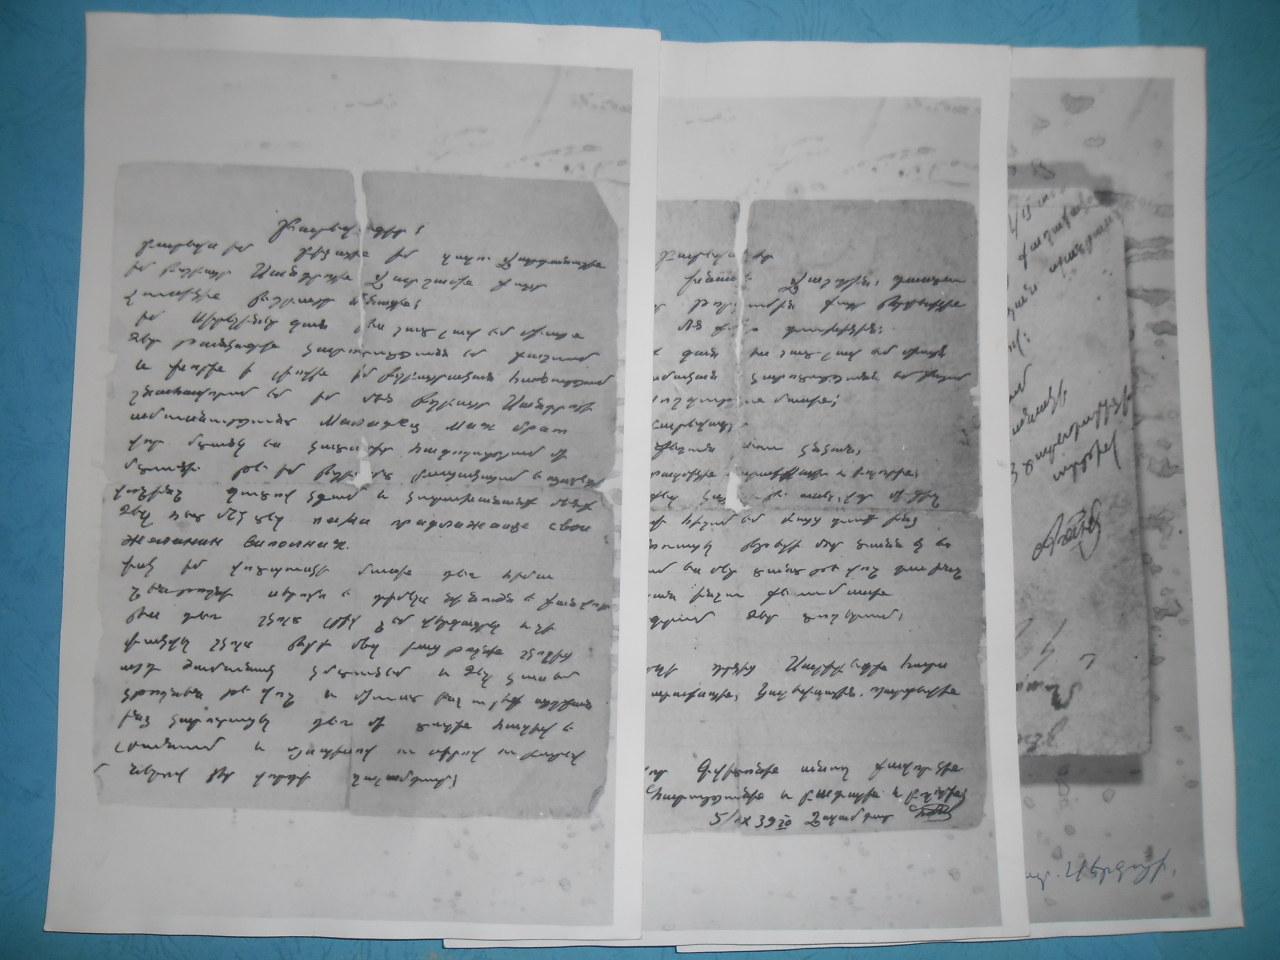 Նամակ՝ Ղալամդար Սերգոյի Մնեյանից (Հայրենական պատերազմի մասնակից) հարազատներին